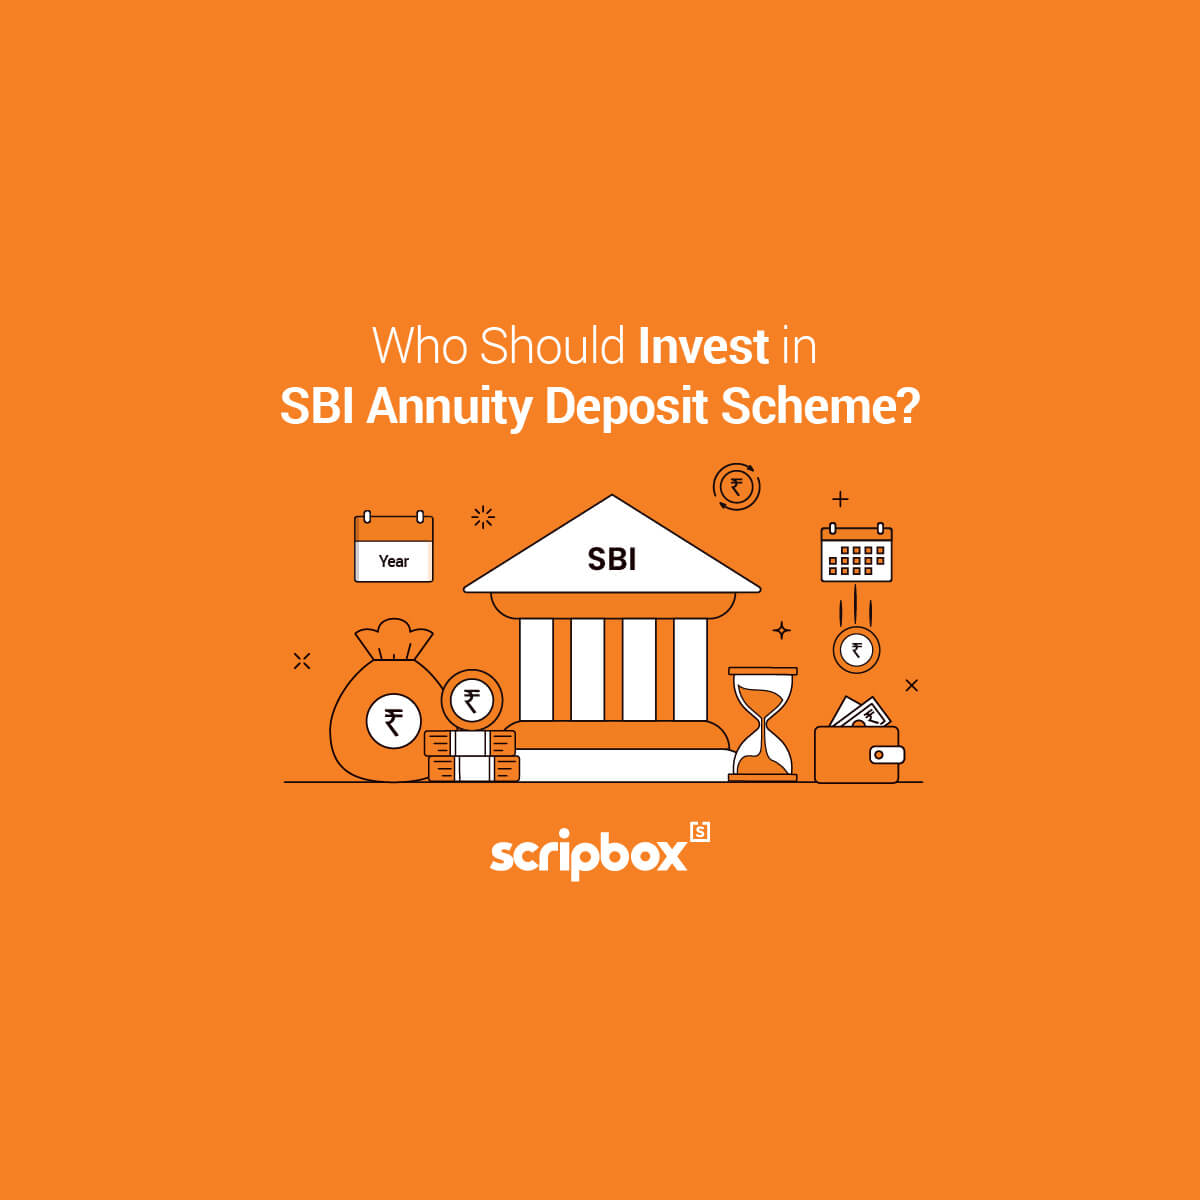 sbi-annuity-deposit-scheme